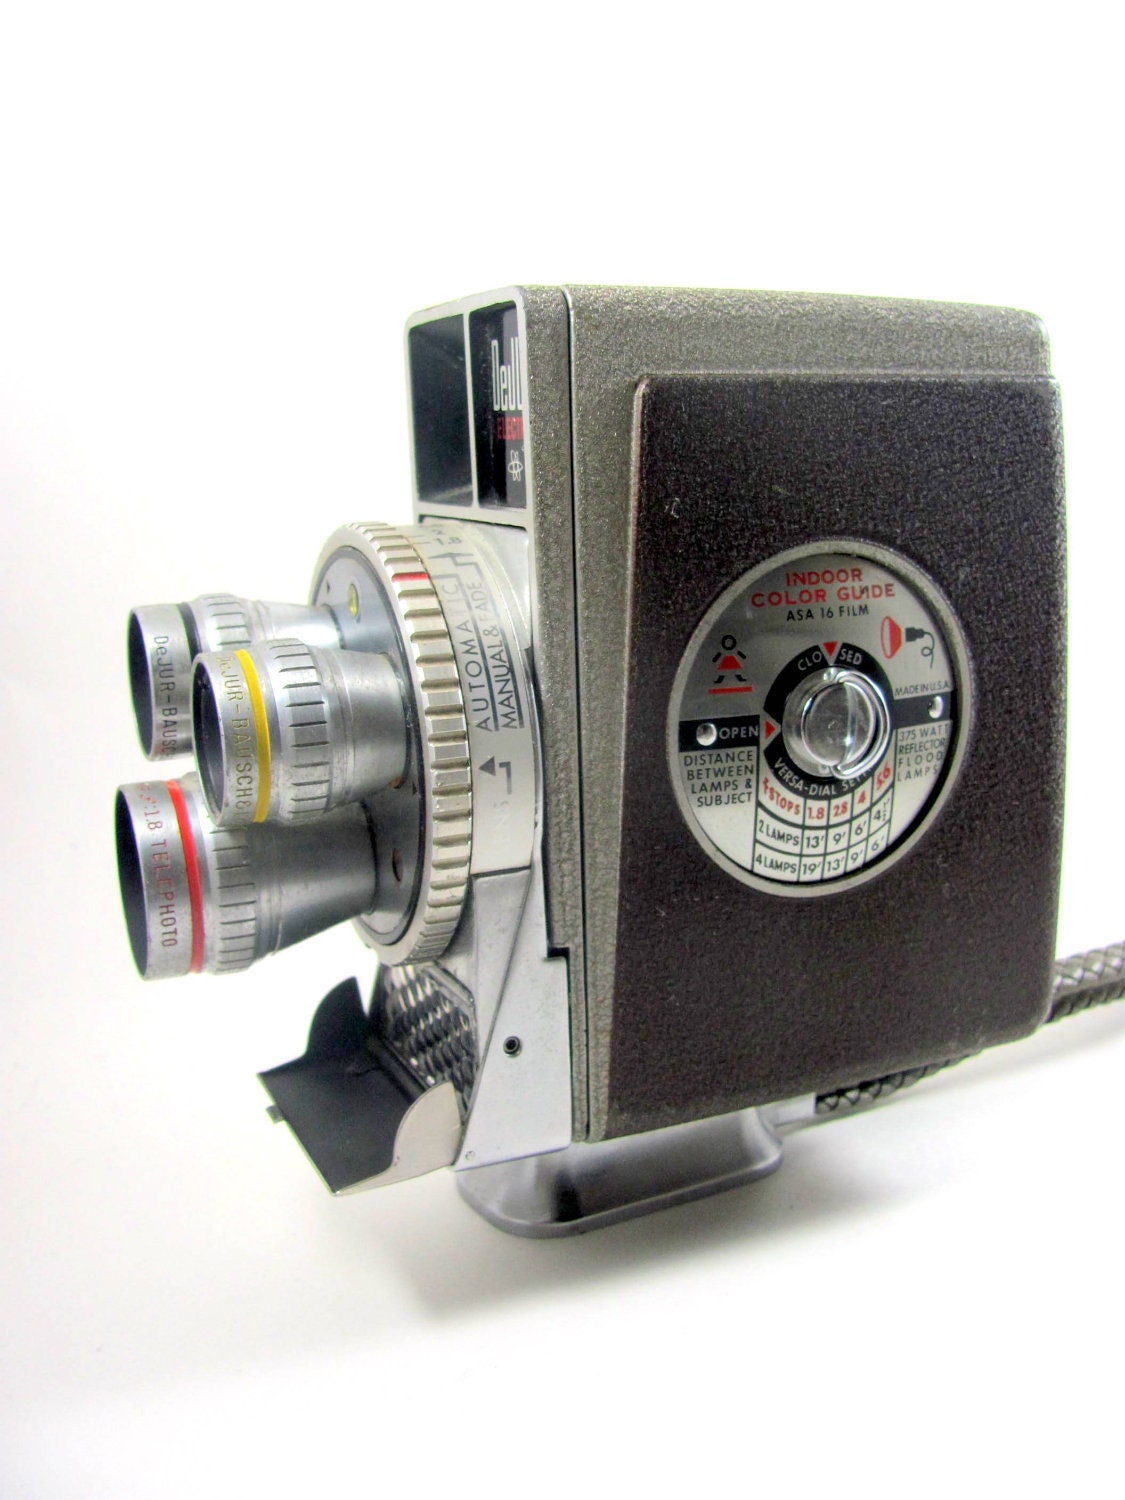 8mm Dejur Movie Camera Vintage Camera Electra Antique 1950s | Etsy